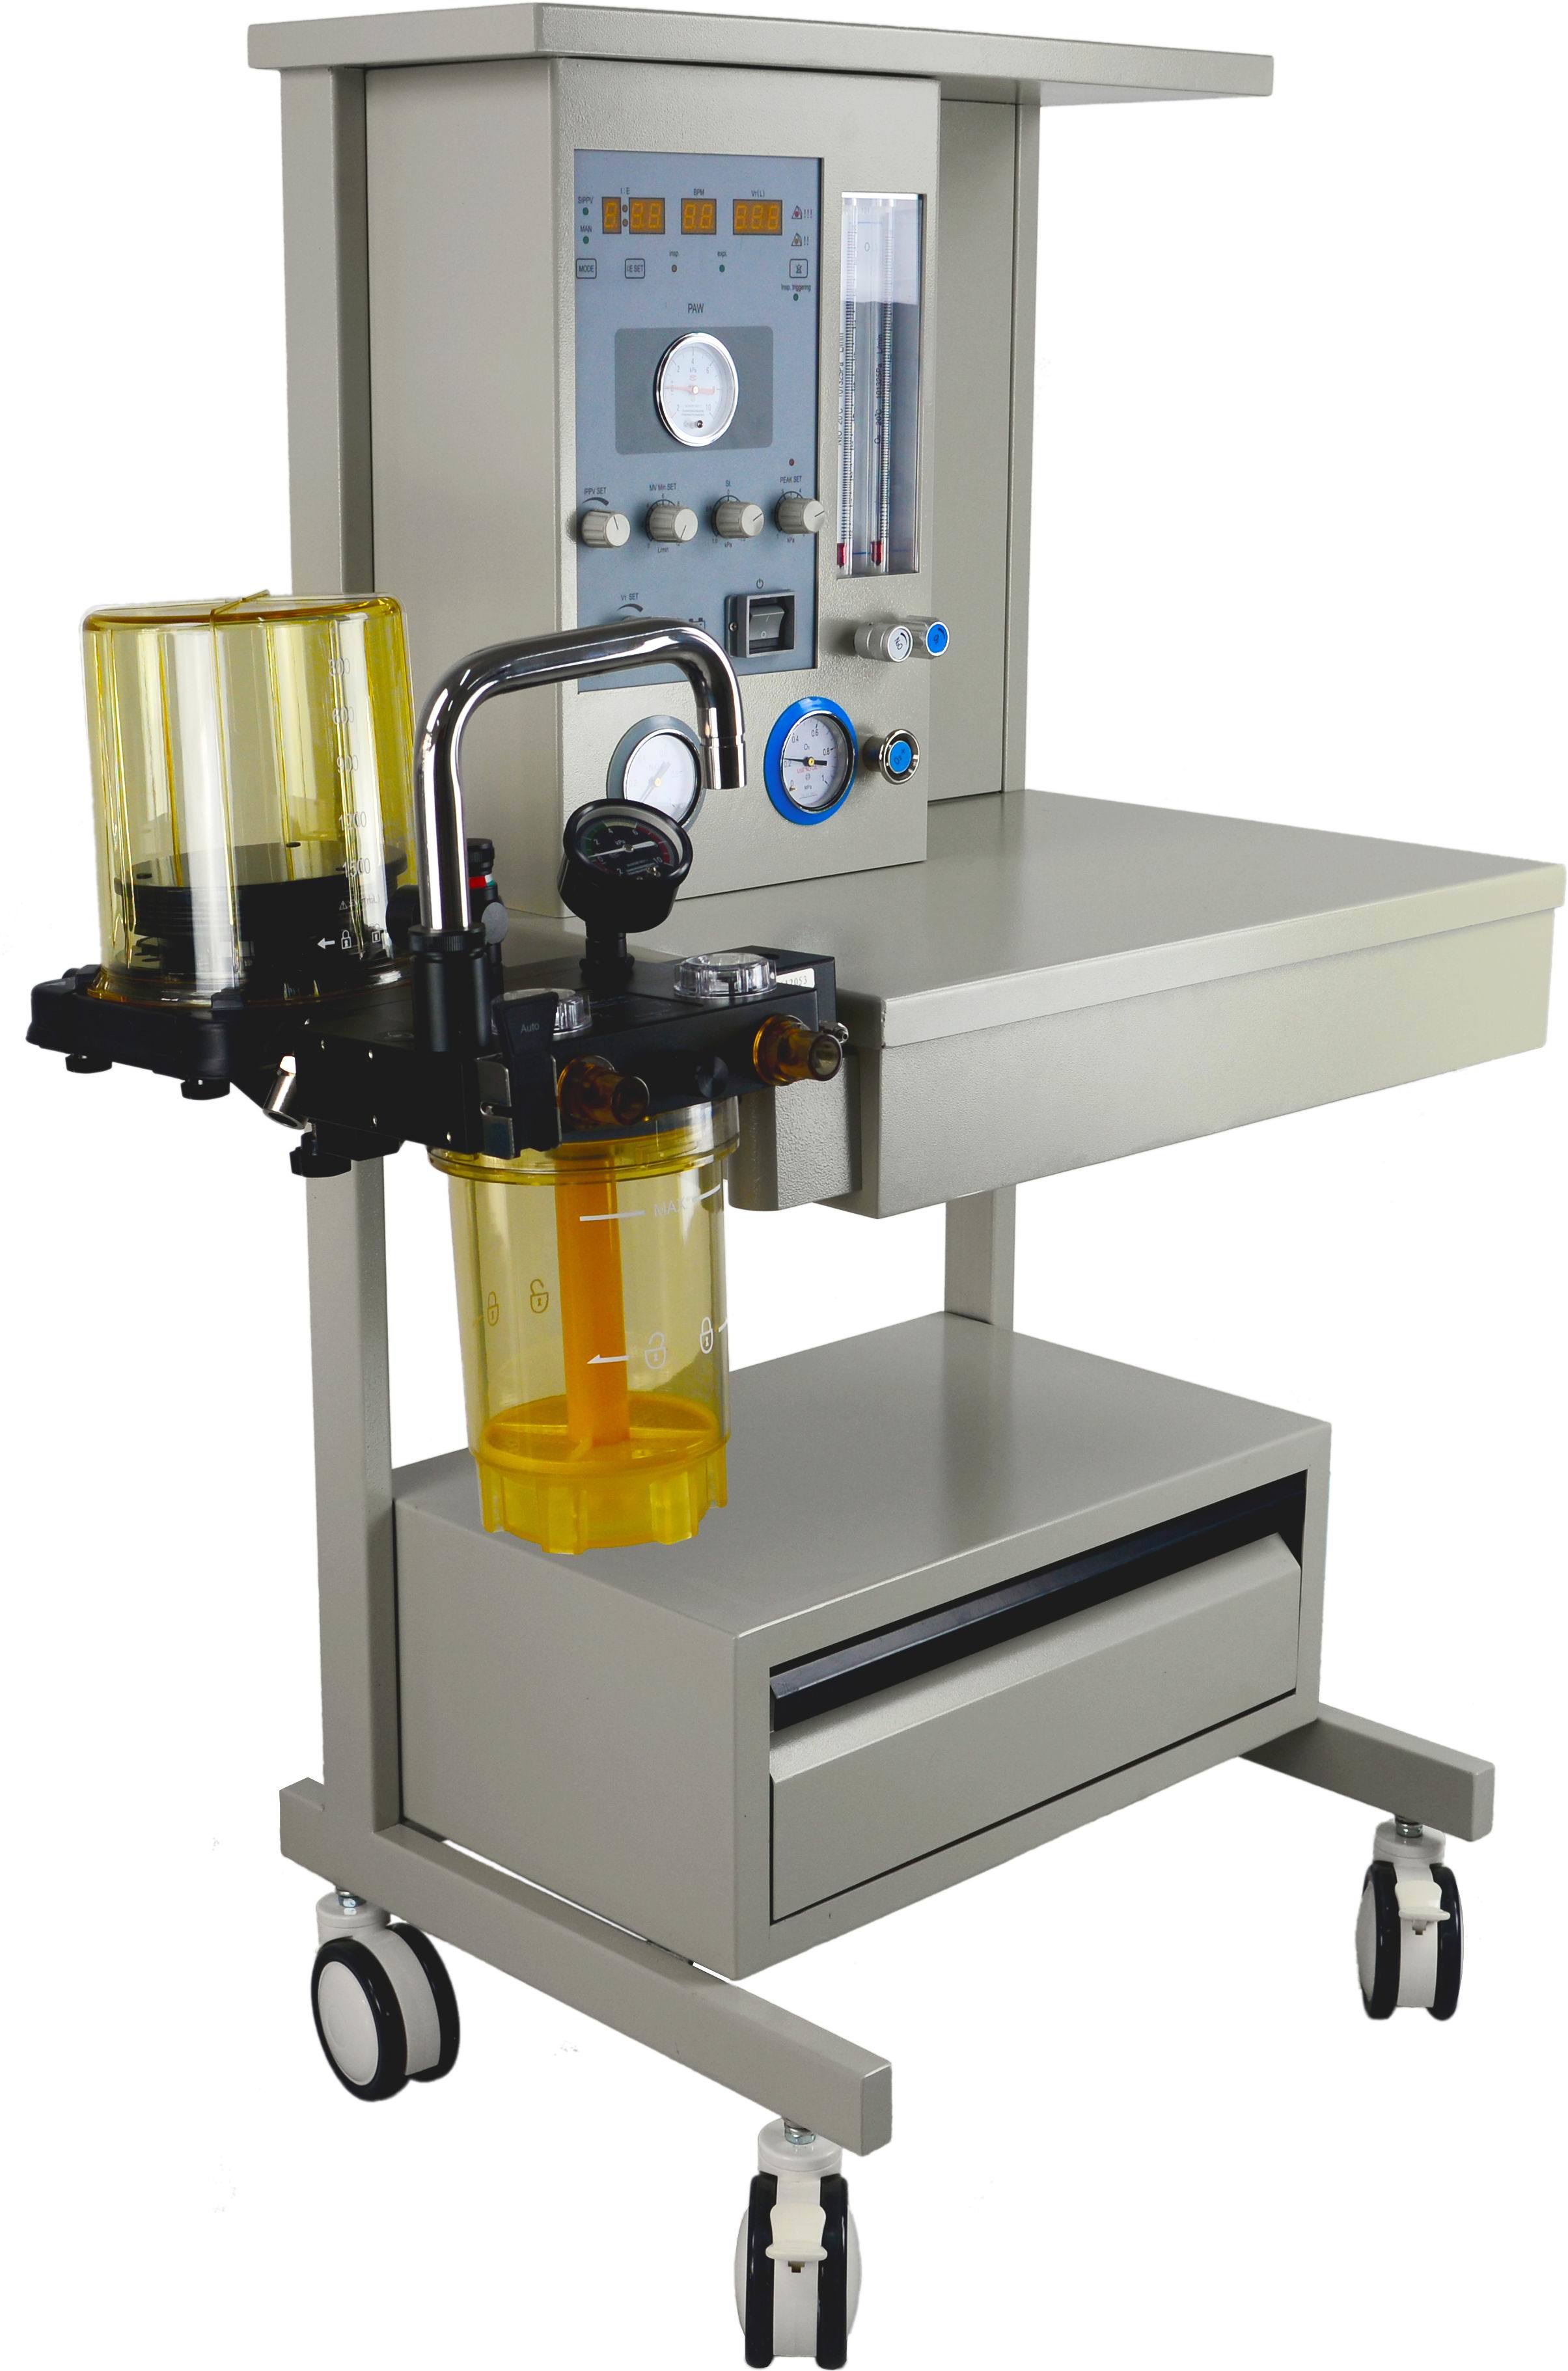 HA-3200A Machine d'anesthésie ICU de matériel médical de vente chaude